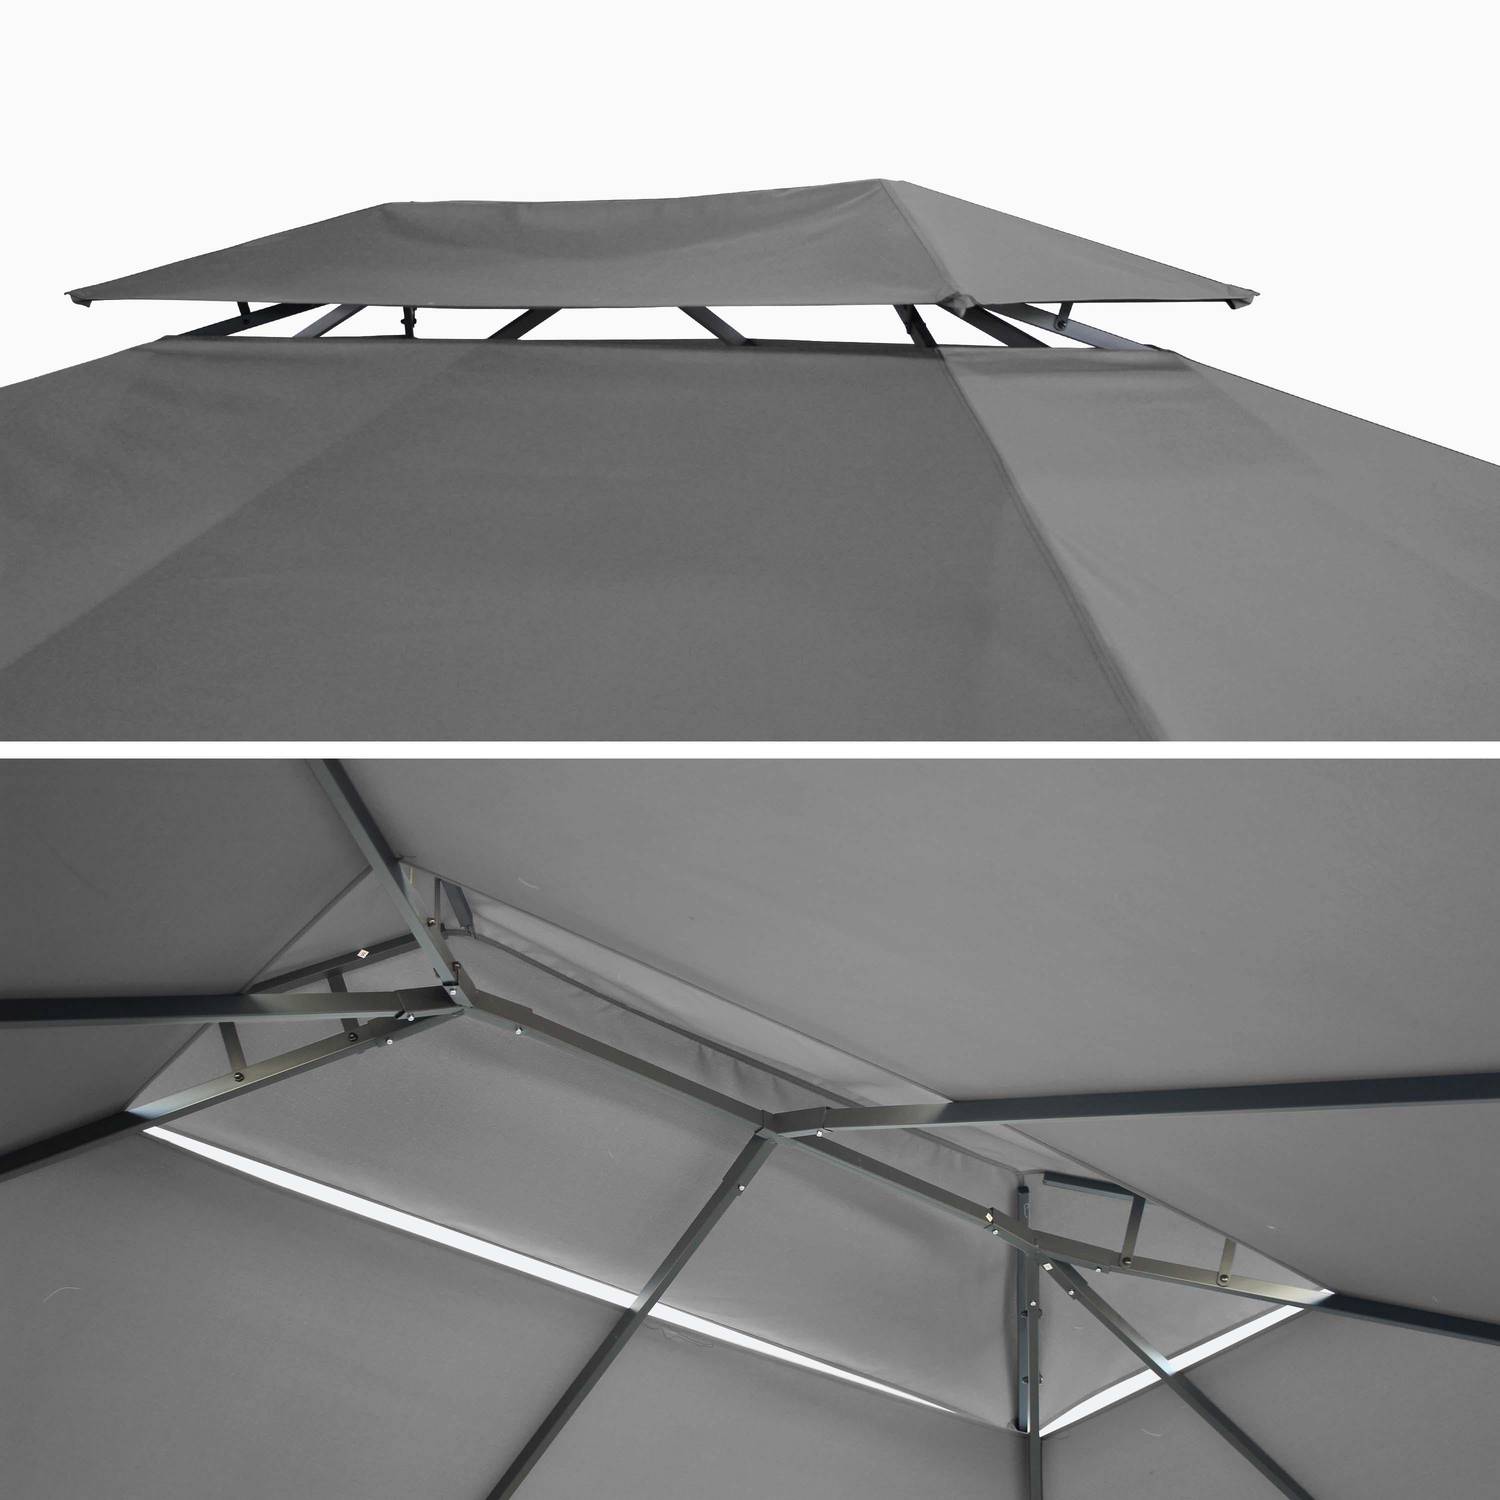 Ensemble complet toile de toit et rideaux gris pour tonnelle 3x4m Divodorum - toile de rechange pergola, toile de remplacement Photo2